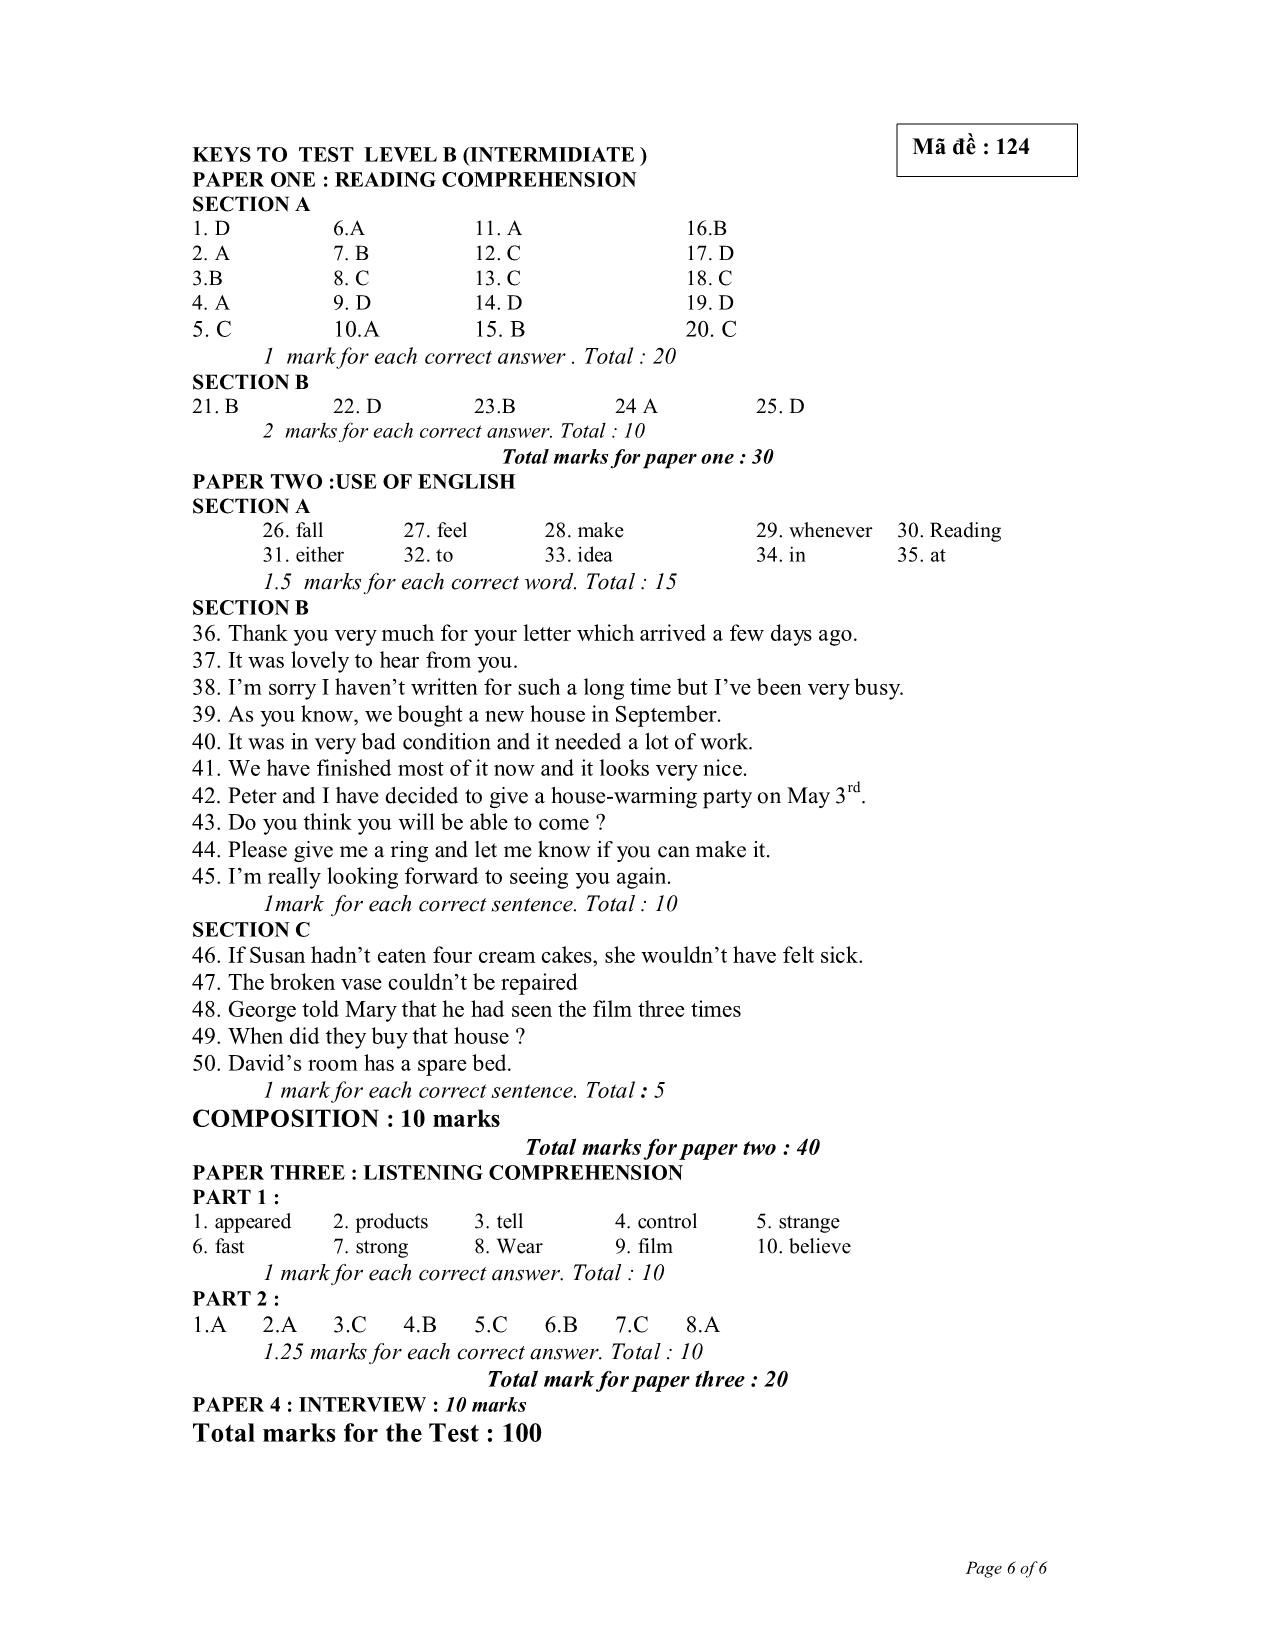 Đề thi môn viết Tiếng Anh B3 - 2008 - Mã đề: 124 trang 6